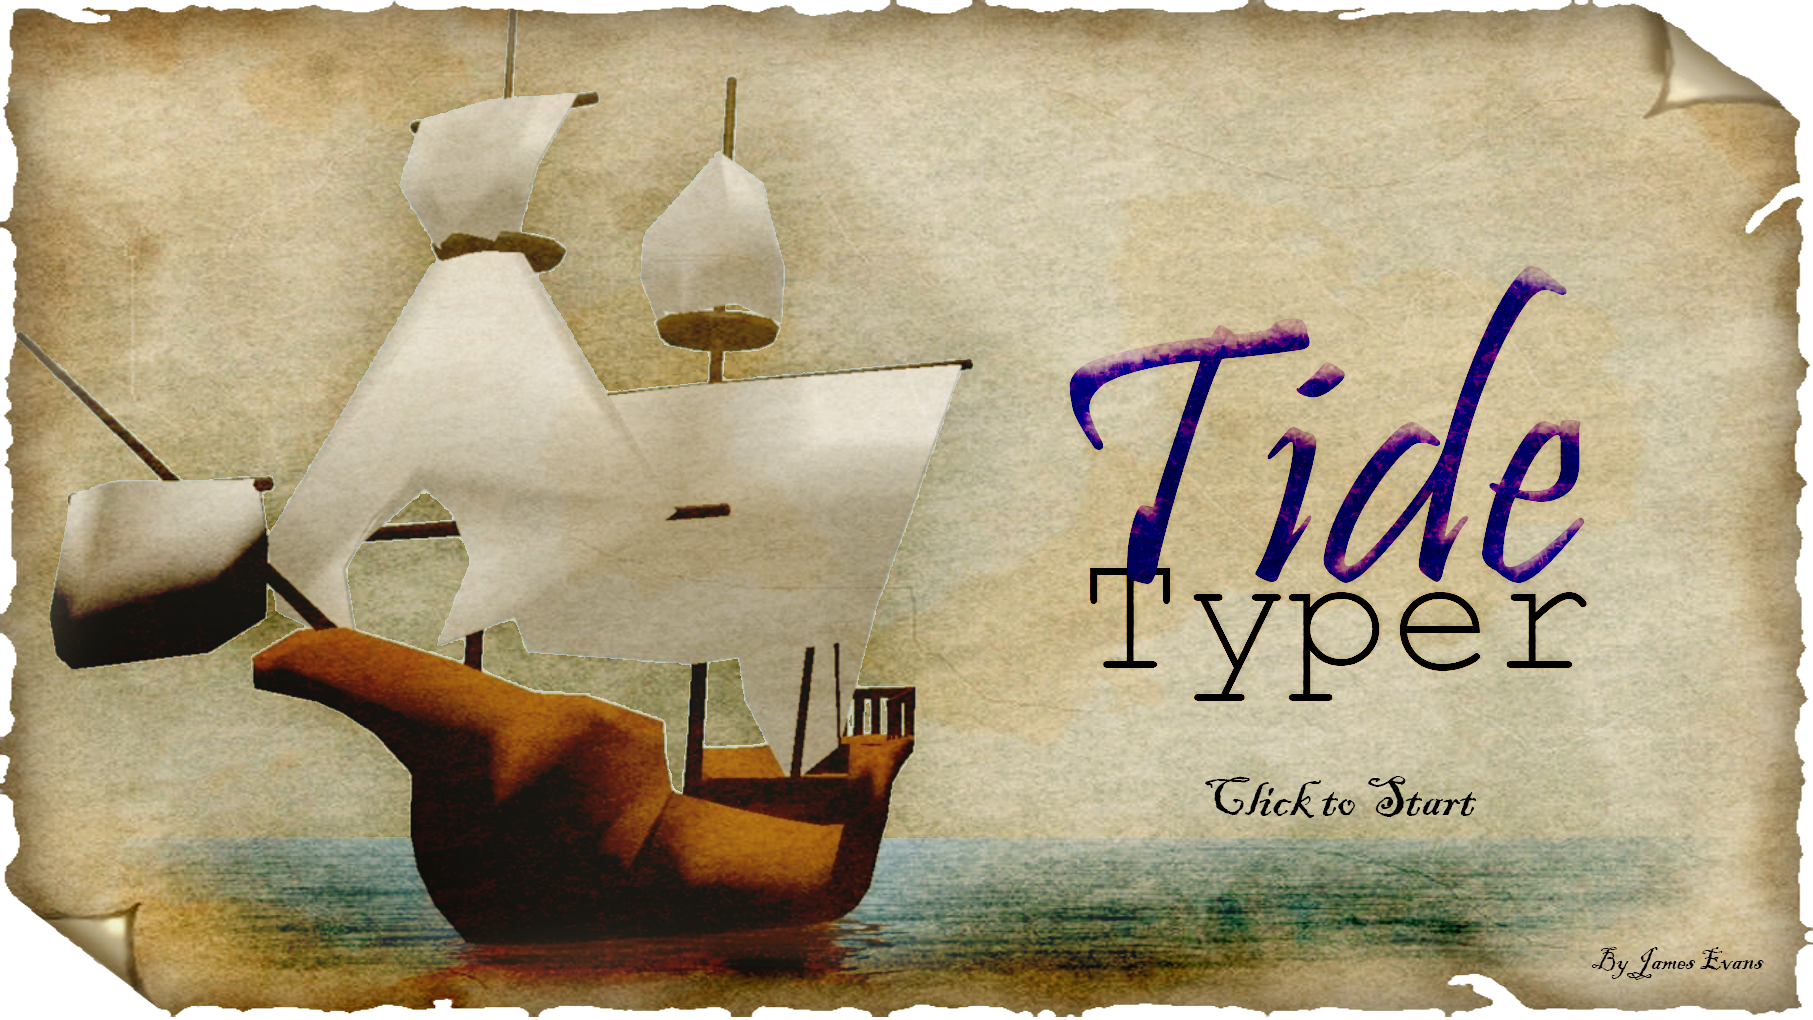 The Tide Typer